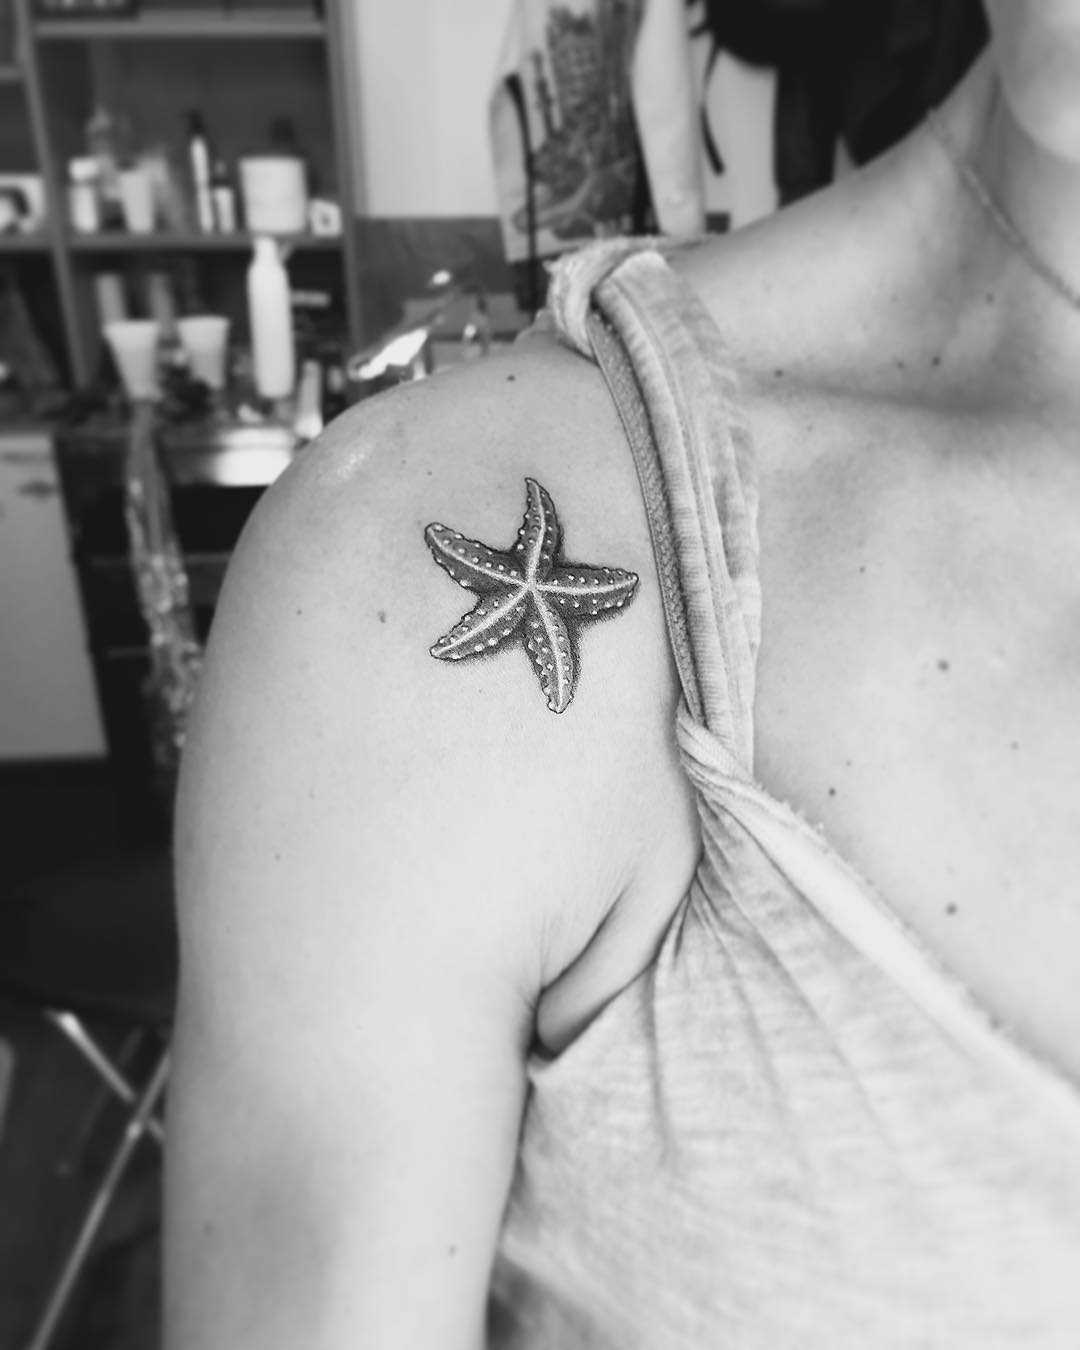 Starfish Tattoo On Wrist - Tattoos Designs